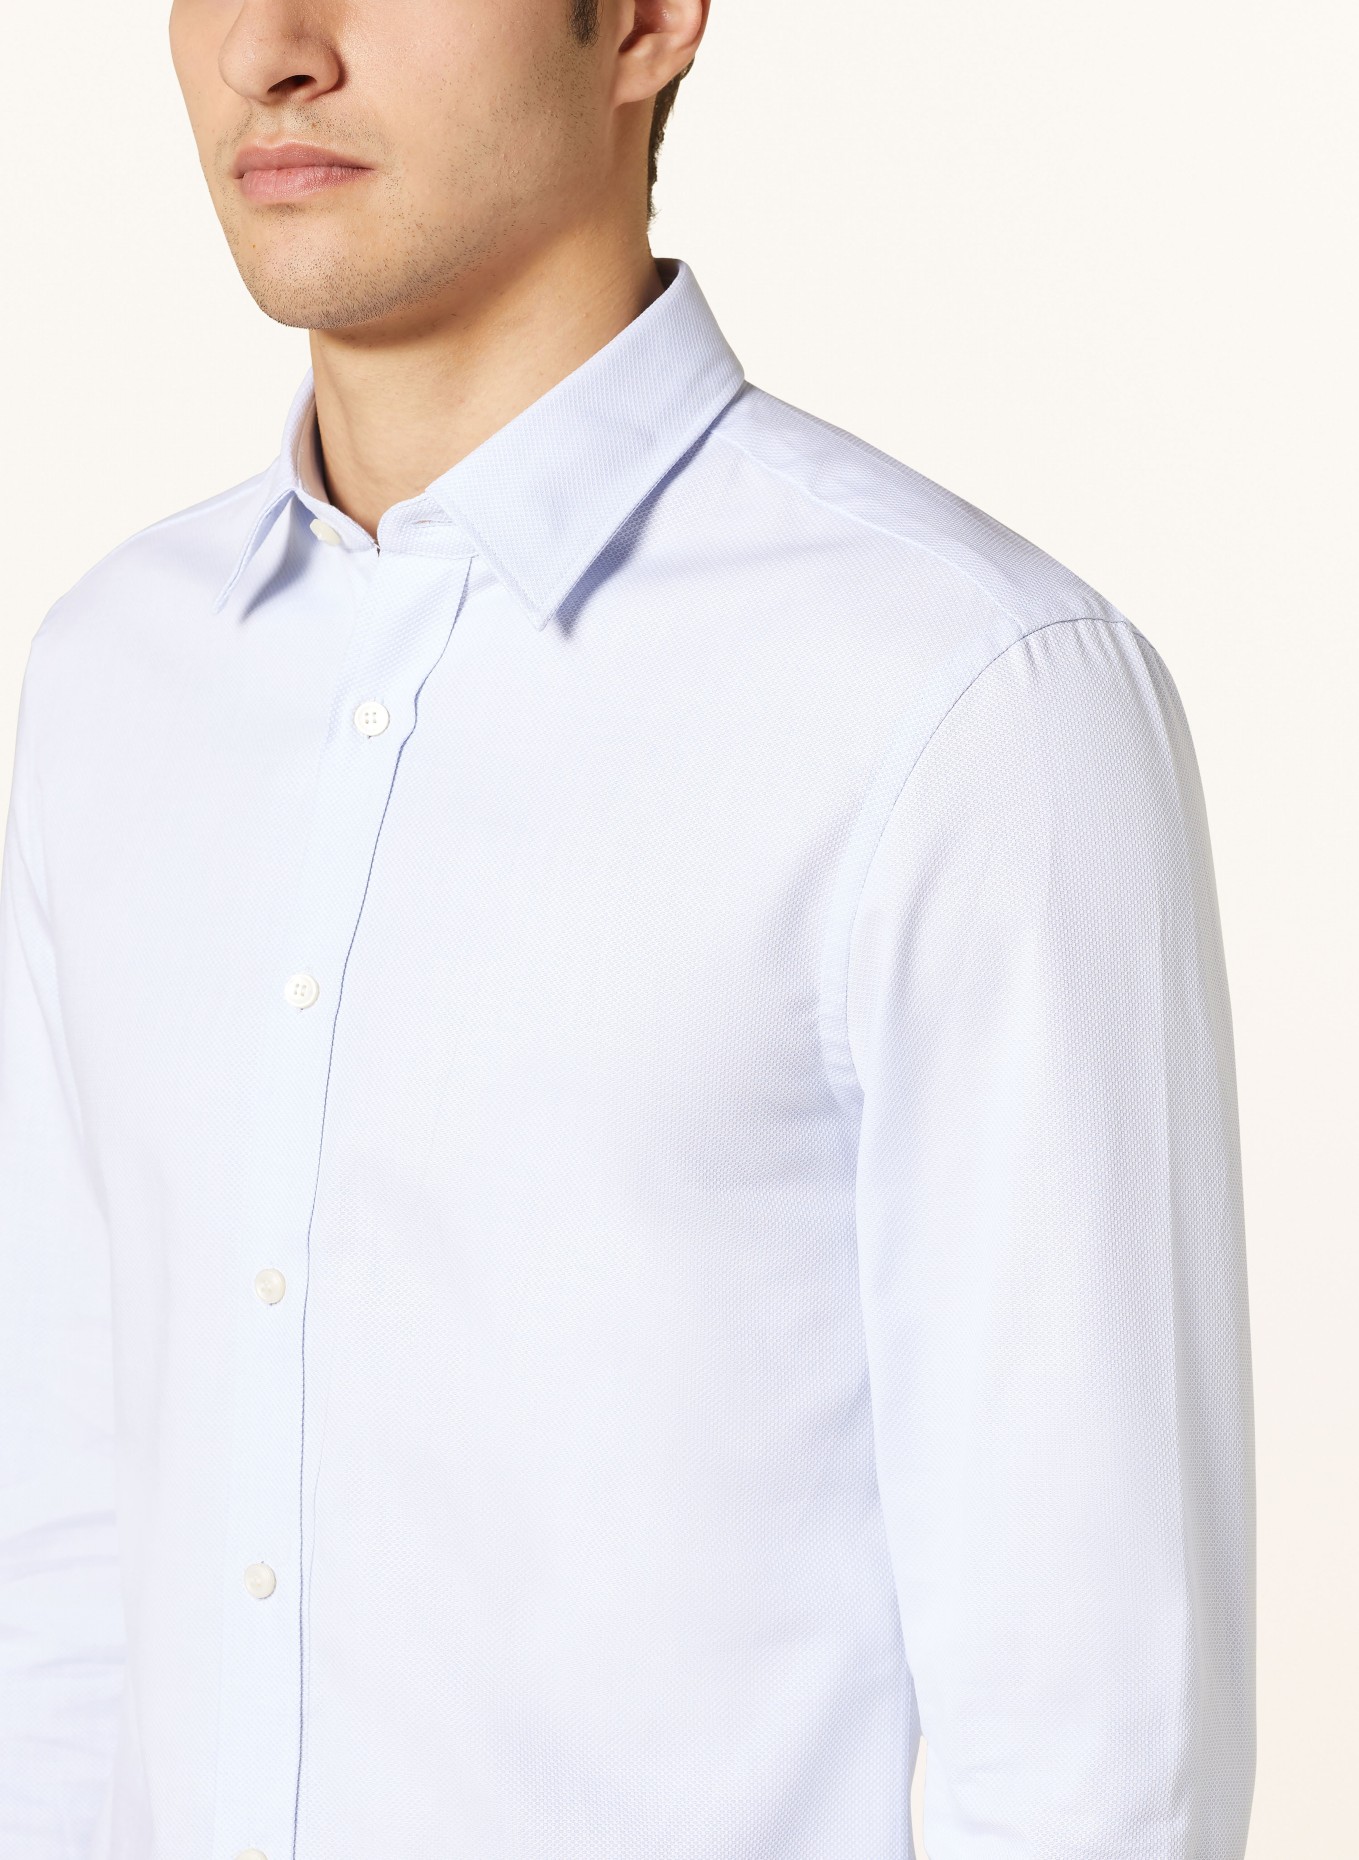 TIGER OF SWEDEN Shirt ADLEY slim fit, Color: LIGHT BLUE (Image 4)